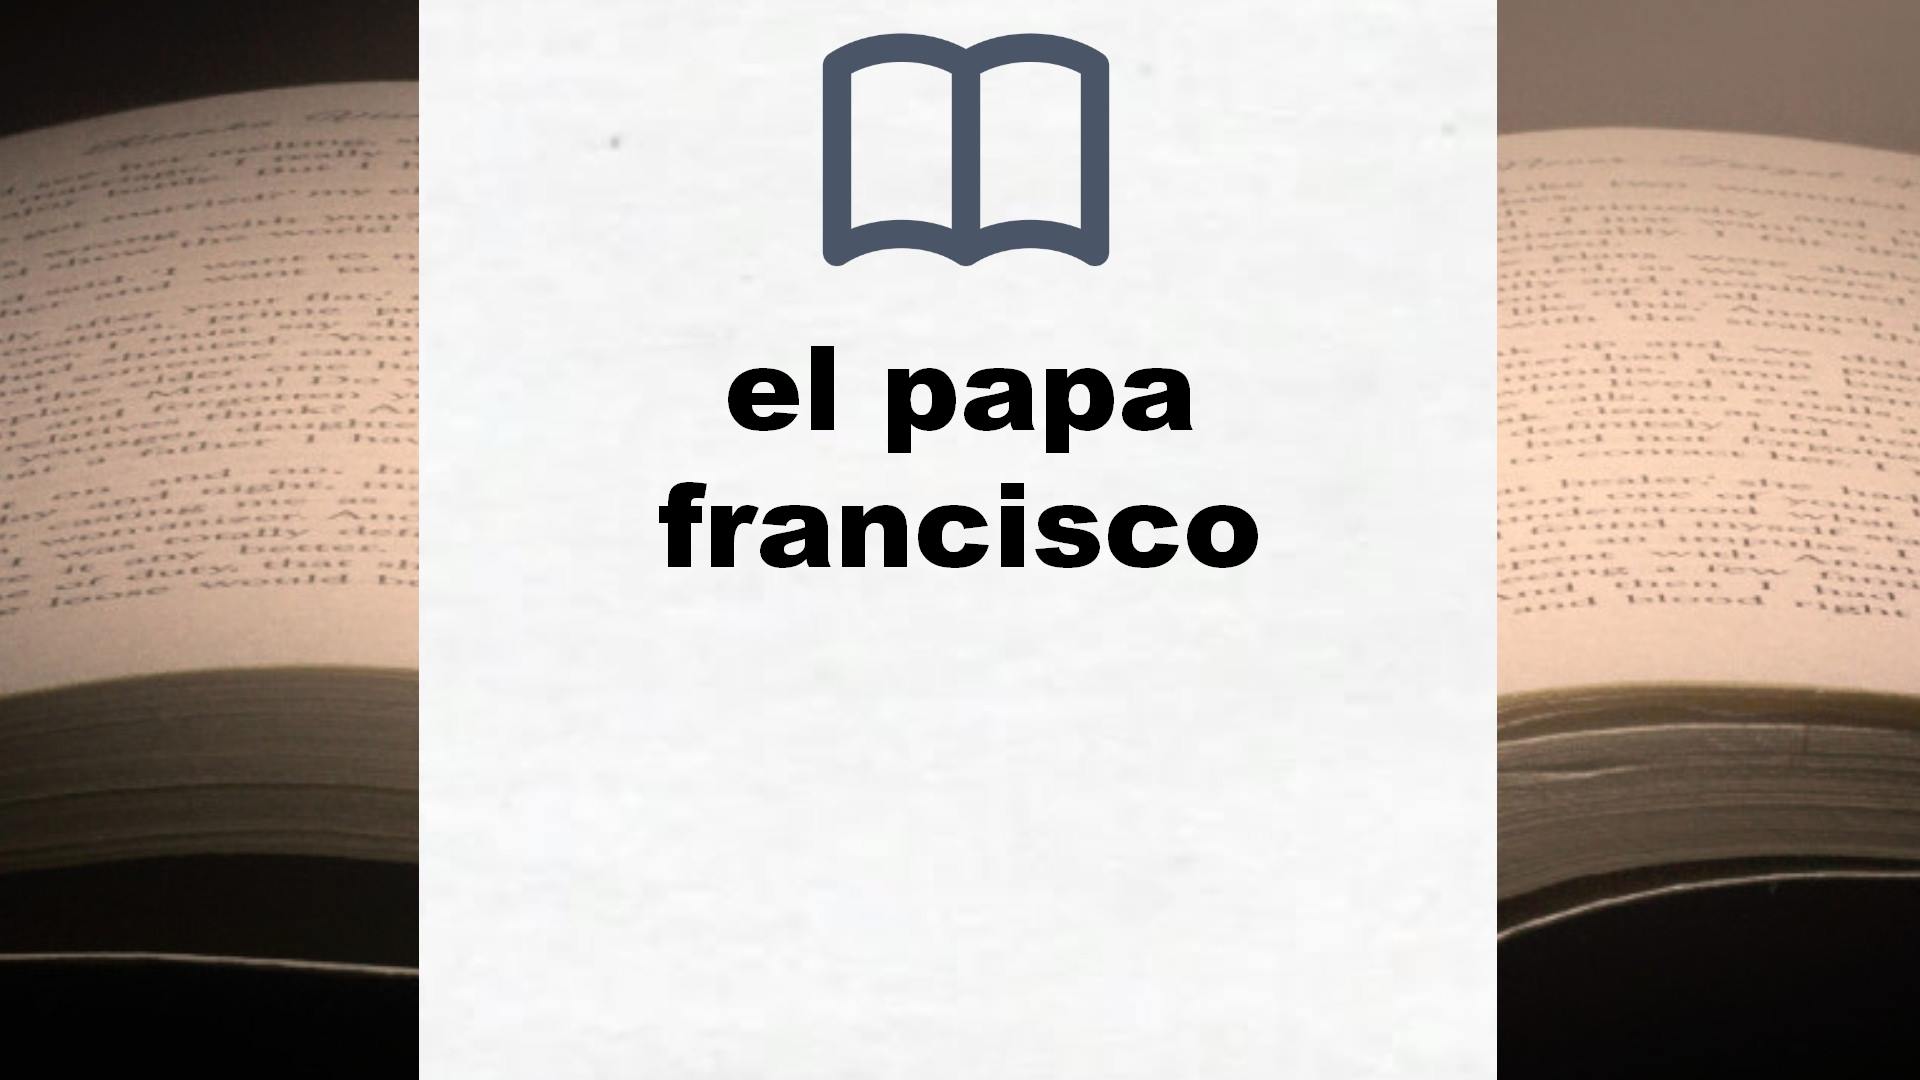 Libros sobre el papa francisco